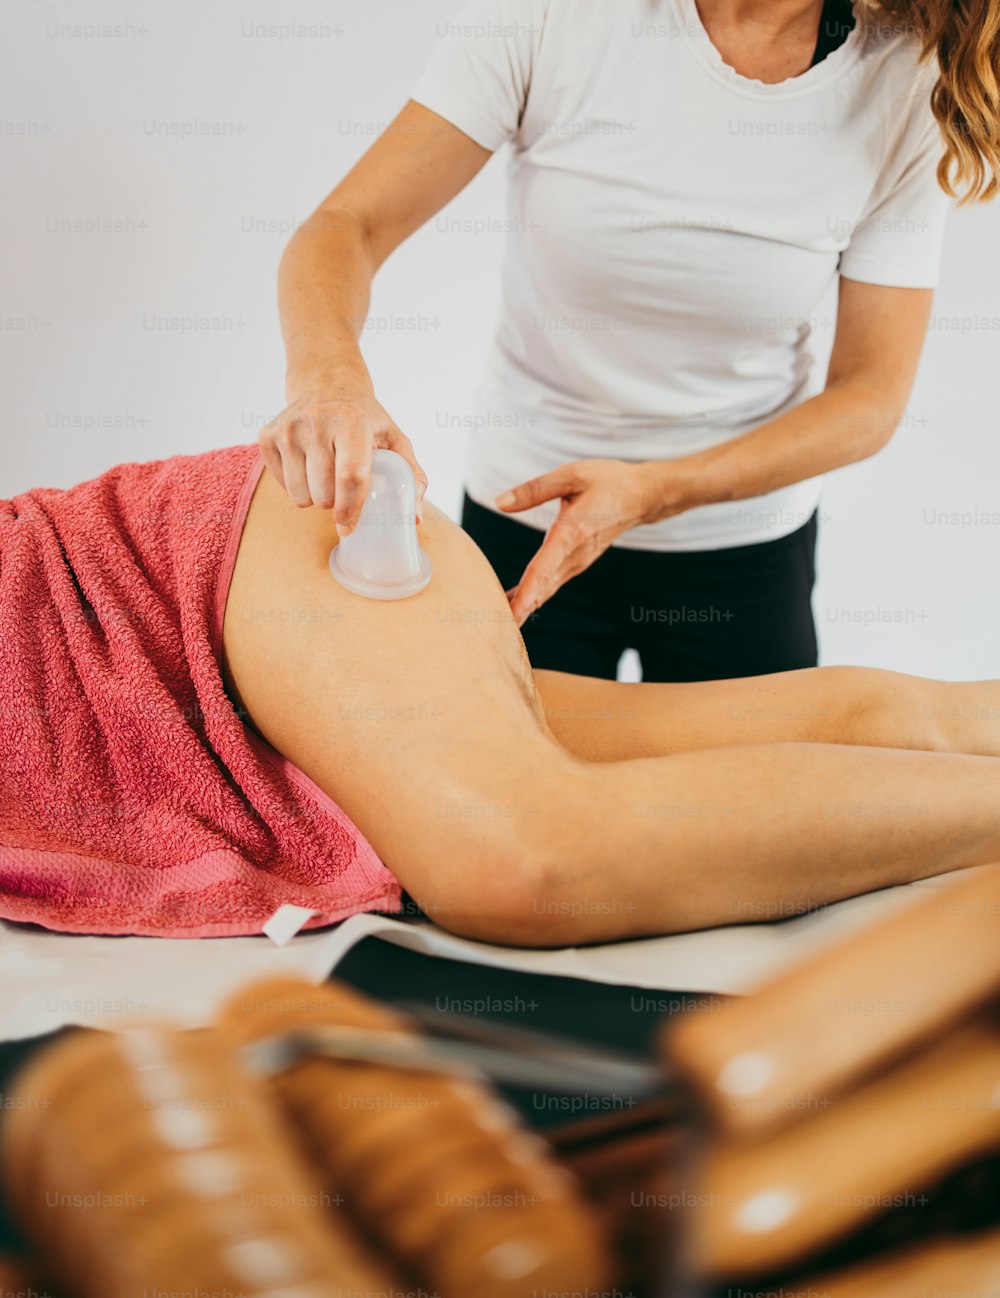 Femme d’âge moyen au massage anti-cellulite professionnel avec l’extracteur de corps sous vide Ventuza. Plan rapproché.